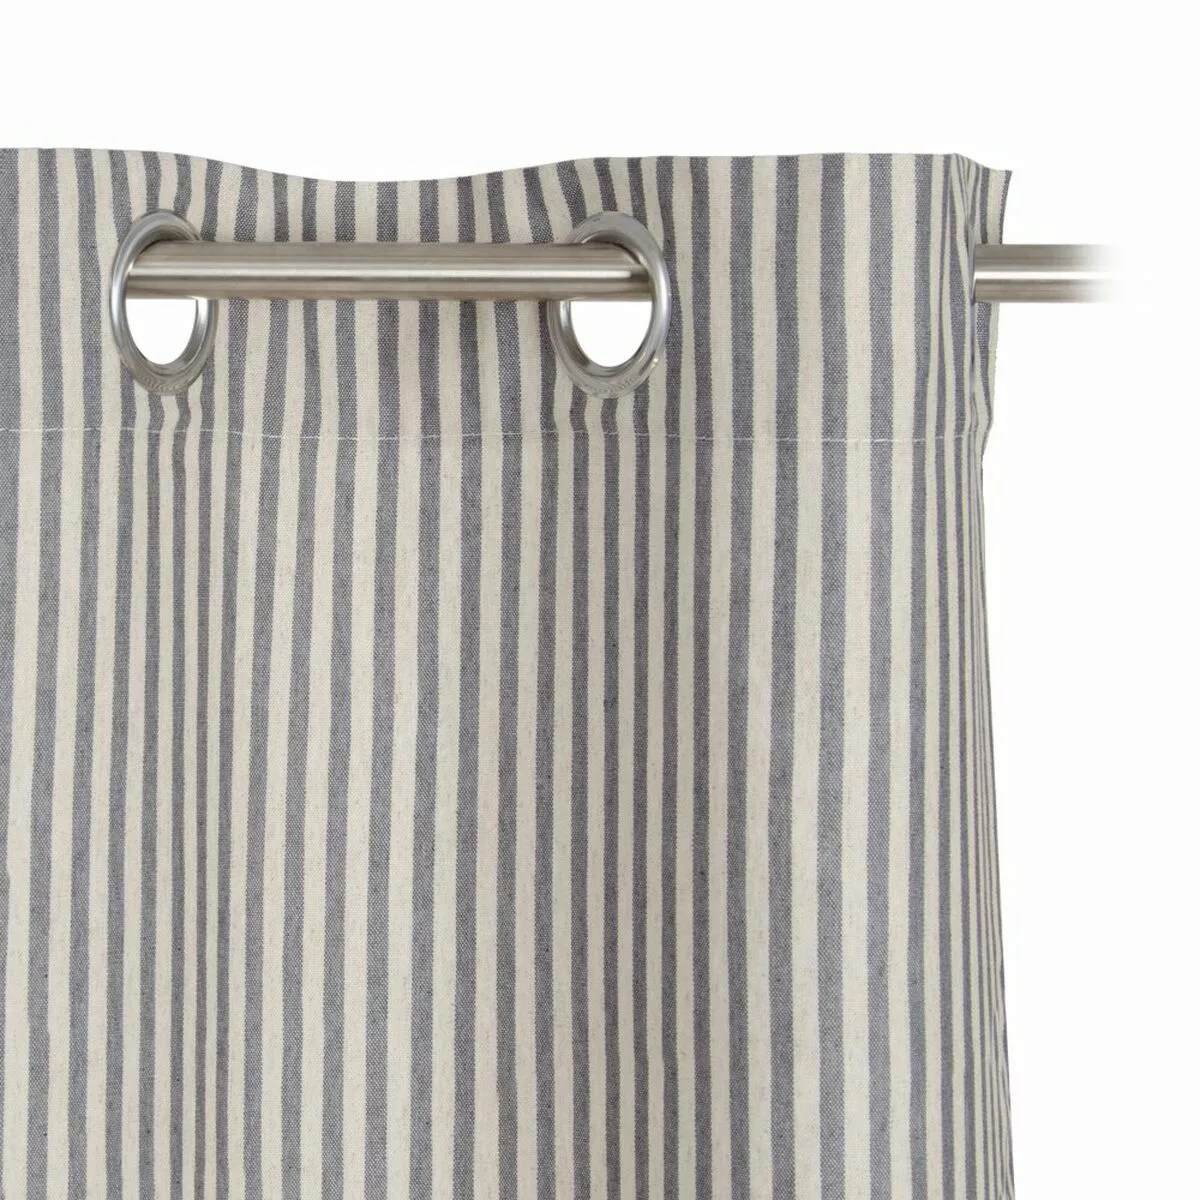 Vorhang Grau Polyester 100 % Baumwolle 140 X 260 Cm günstig online kaufen